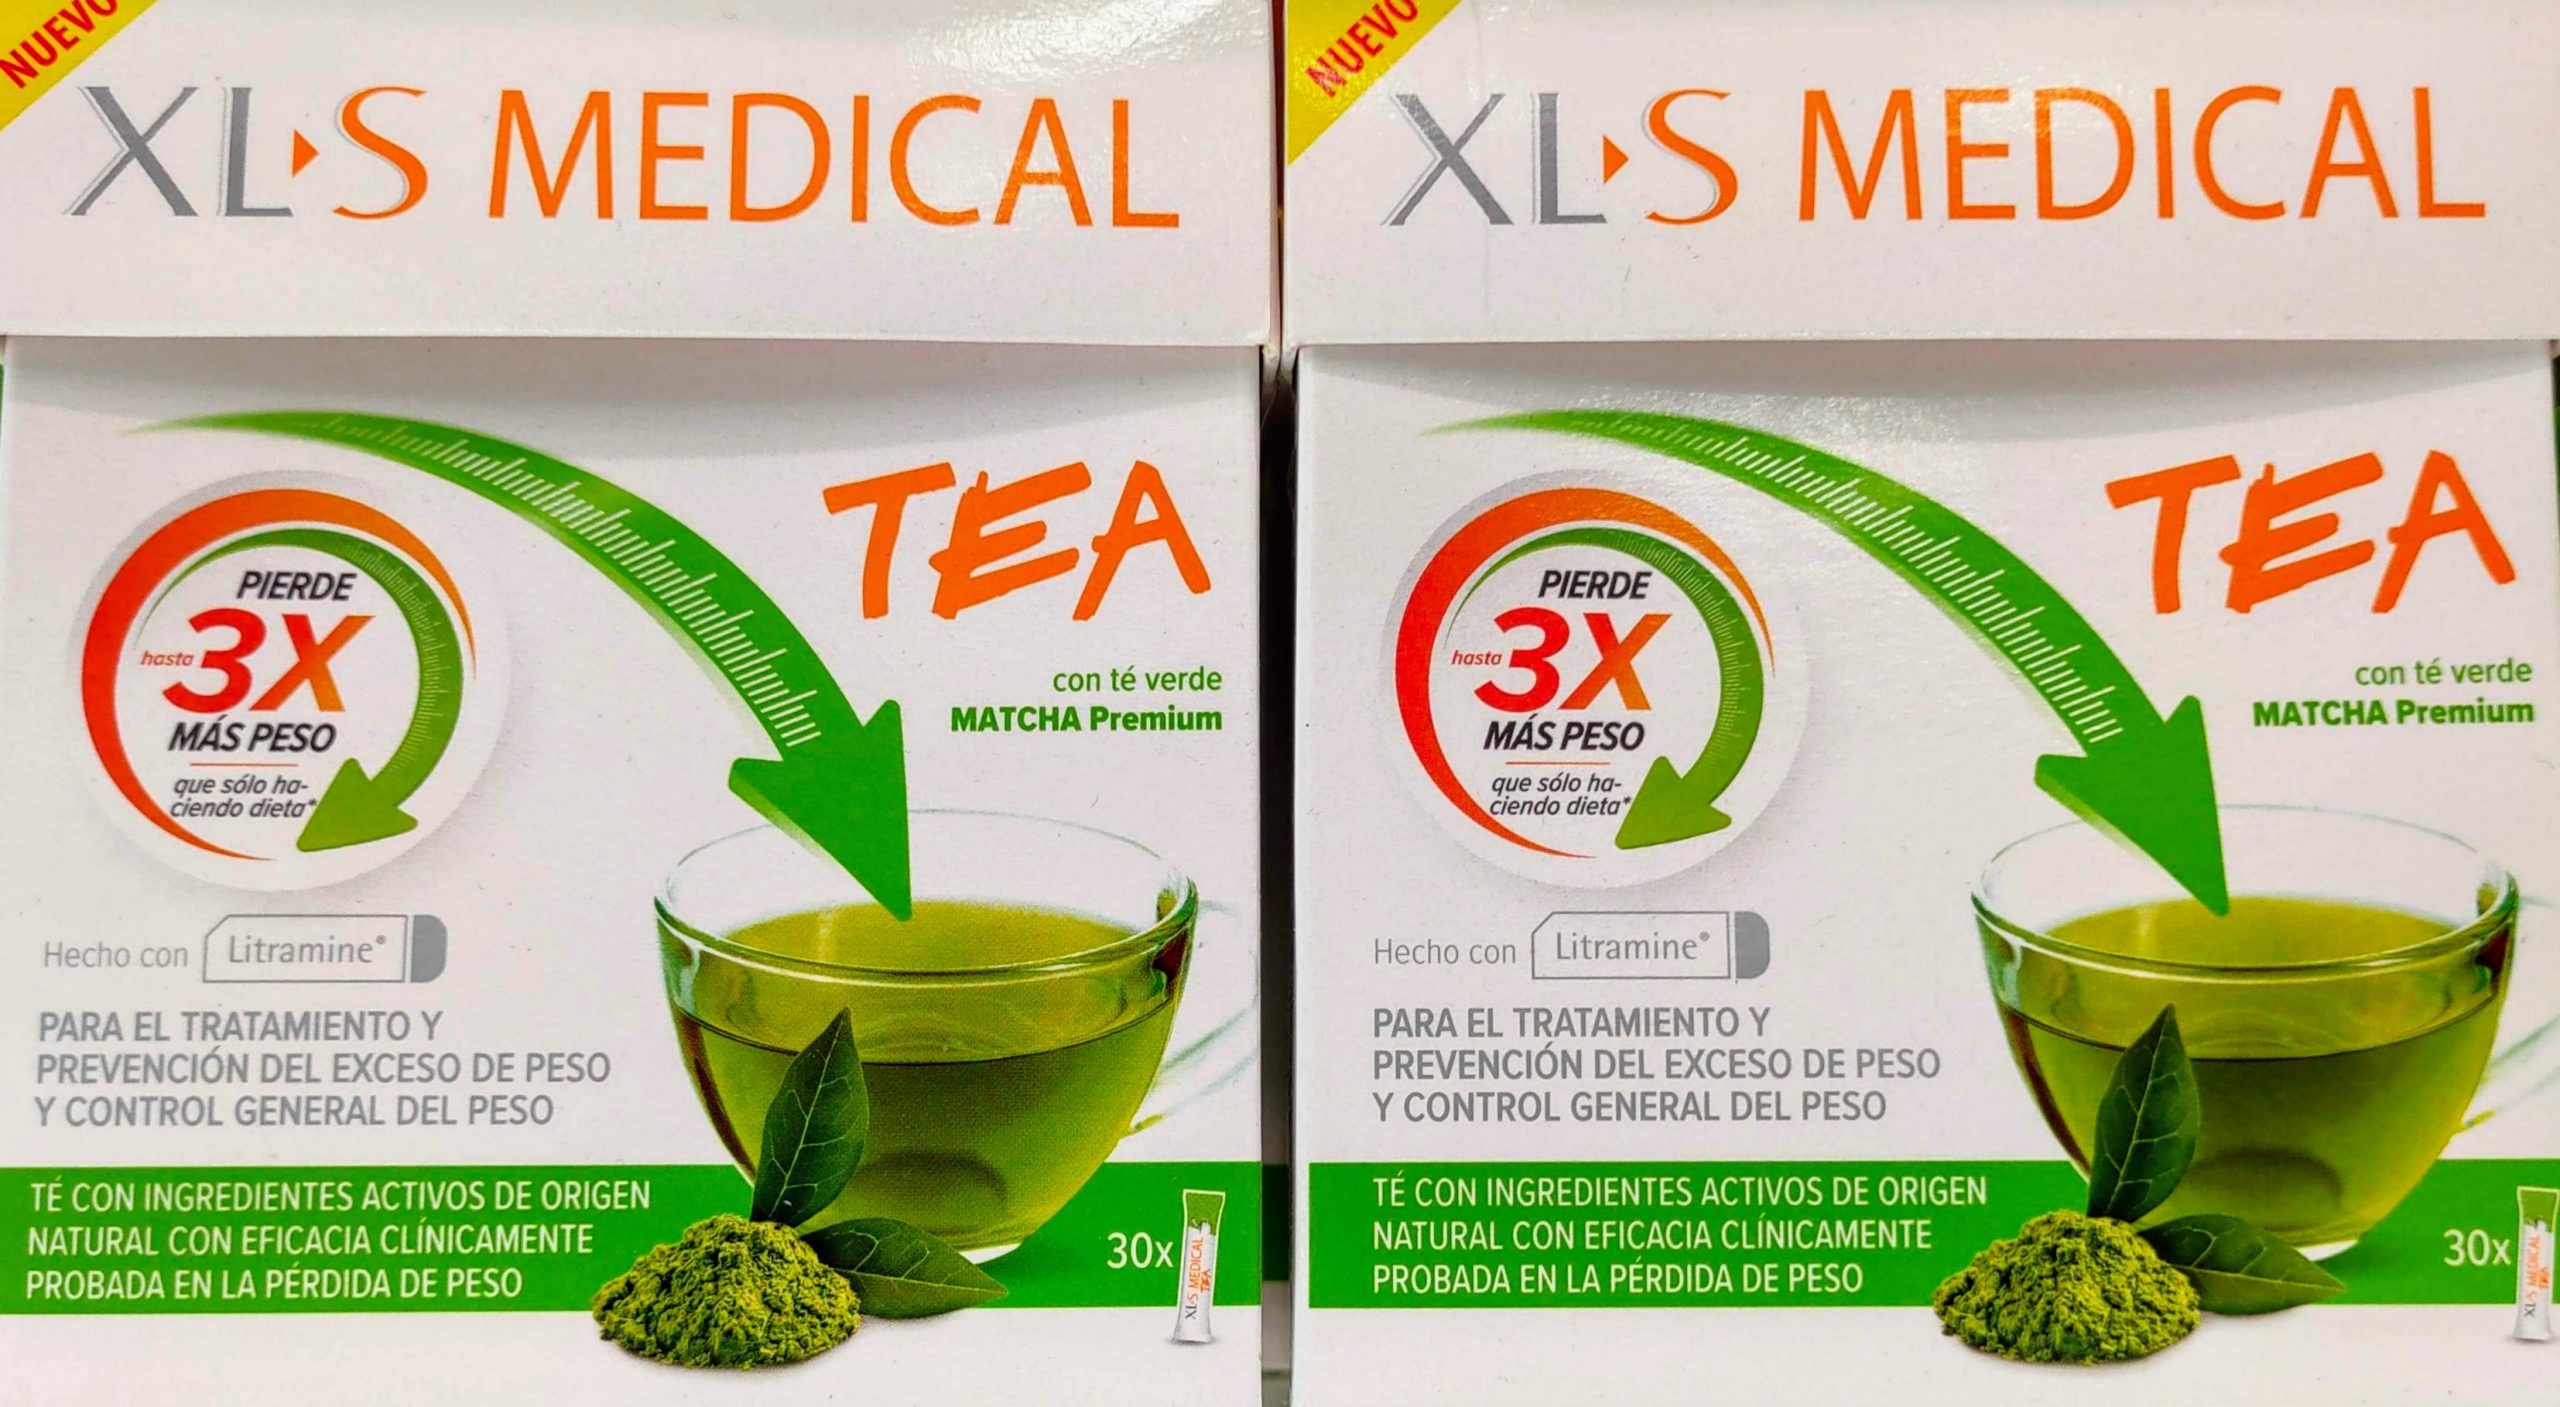 XLS Medical Tea es una herramienta eficaz para el control del peso